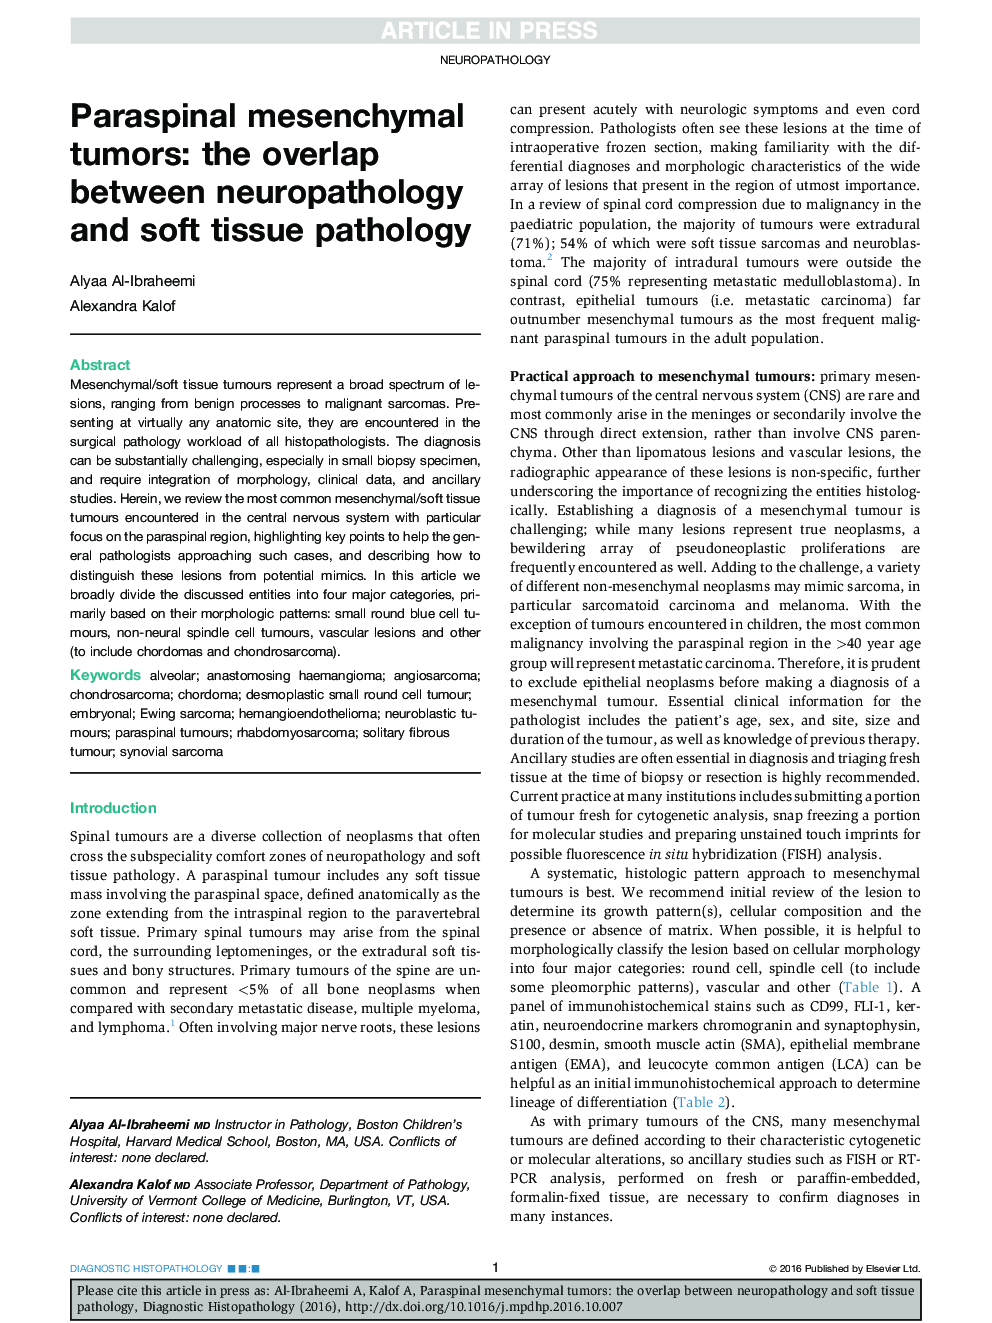 Paraspinal mesenchymal tumors: the overlap between neuropathology and soft tissue pathology